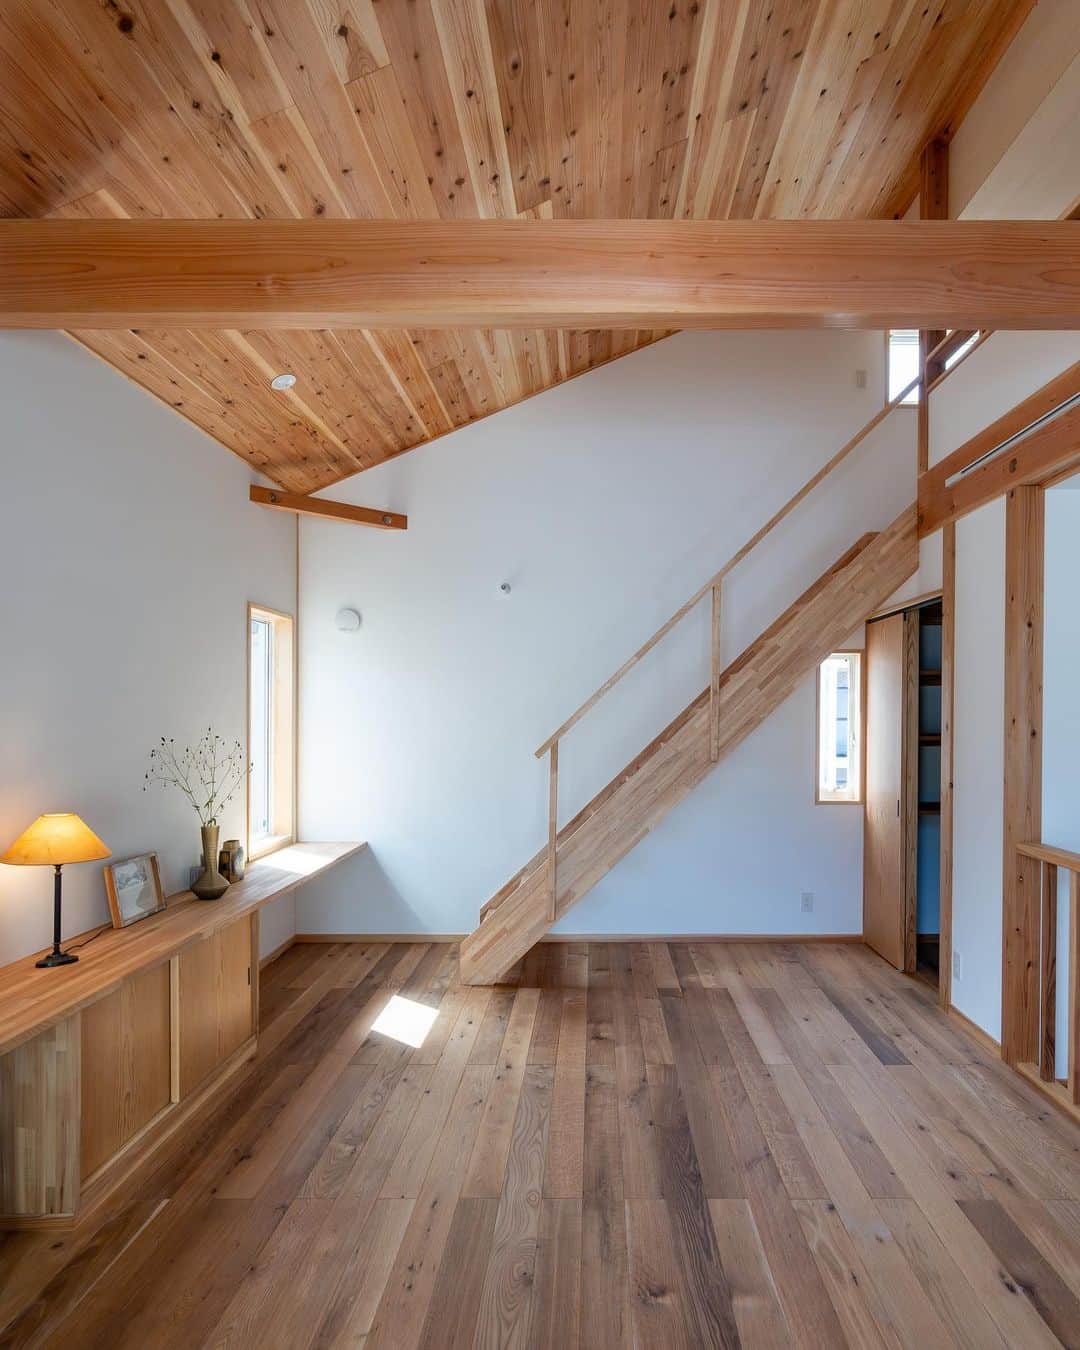 クボタ住建のインスタグラム：「「木の家だからできること」  #クボタ住建  ベランダで楽しむニ階リビングの家/S邸 続いて2階をご紹介します♪  階段を上ると大きな勾配天井木貼りが圧巻のリビングへ。 階段を中心にダイニング、キッチン、スタディ、収納部屋が緩やかに繋がります。  一枚目の正面に見える階段からロフトへつながります。 ハシゴで上がるよりも安全です！  ベランダのデッキで楽しむ休日は至福の時間ですね☕️  デッキでビール🍺を合言葉に進めた計画！  したかった事を叶える🤍 そこから家づくりを考えると 楽しいですね！  ＜クボタ住建施工＞  @kubota_jyuken  #2階リビング #リビング階段 #ステンレスキッチン #スタディ #勾配天井 #リビングボード #造作階段 #パントリー #造作提案 #バルコニーのある暮らし #ウッドデッキ  クボタ住建は優しく温かい自然素材の木の家をつくります HP & more photos→@kubota_jyuken 施工事例多数掲載しております。 ホームページへもぜひ↓ https://kubotajyuken.com/  ⭐︎スタッフブログ⭐︎ https://kubotajyuken.com/blog/  #クボタ住建 #神奈川の注文住宅 #大和市#湘南の家#suumo注文住宅 #自由設計 #木の家 #無垢の家 #自然素材の家 #和モダンな家 #暮らしをつくる #暮らしを楽しむ #丁寧な暮らし#構造現し #工務店がつくる家  #工務店だからつくれる家  #工務店   クボタ住建 棟梁の自宅、随時見学受付ます。 資料請求やお問い合わせも是非。 メッセージDMでもどうぞ」